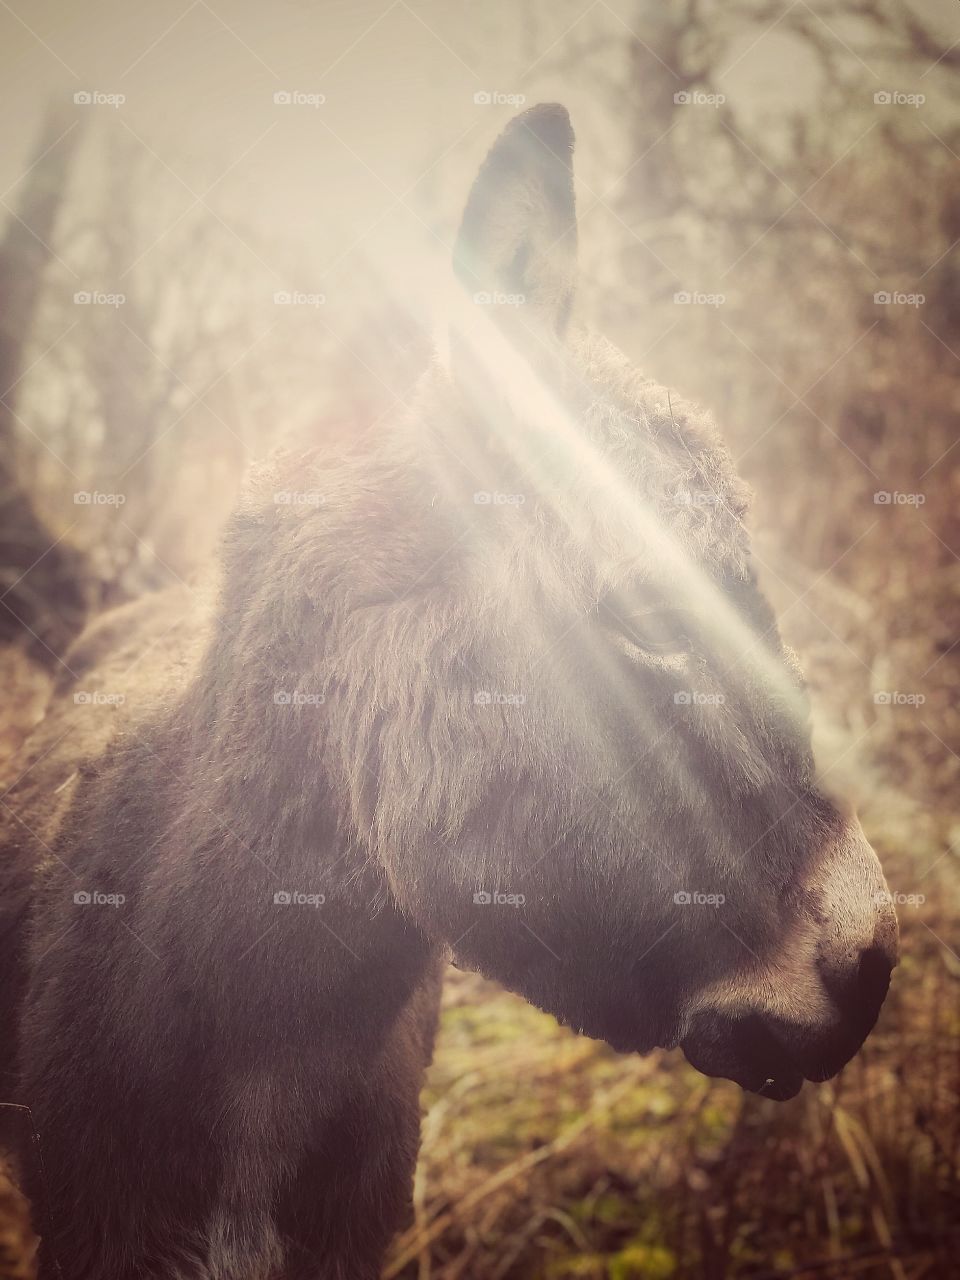 Fotogenic donkey! 